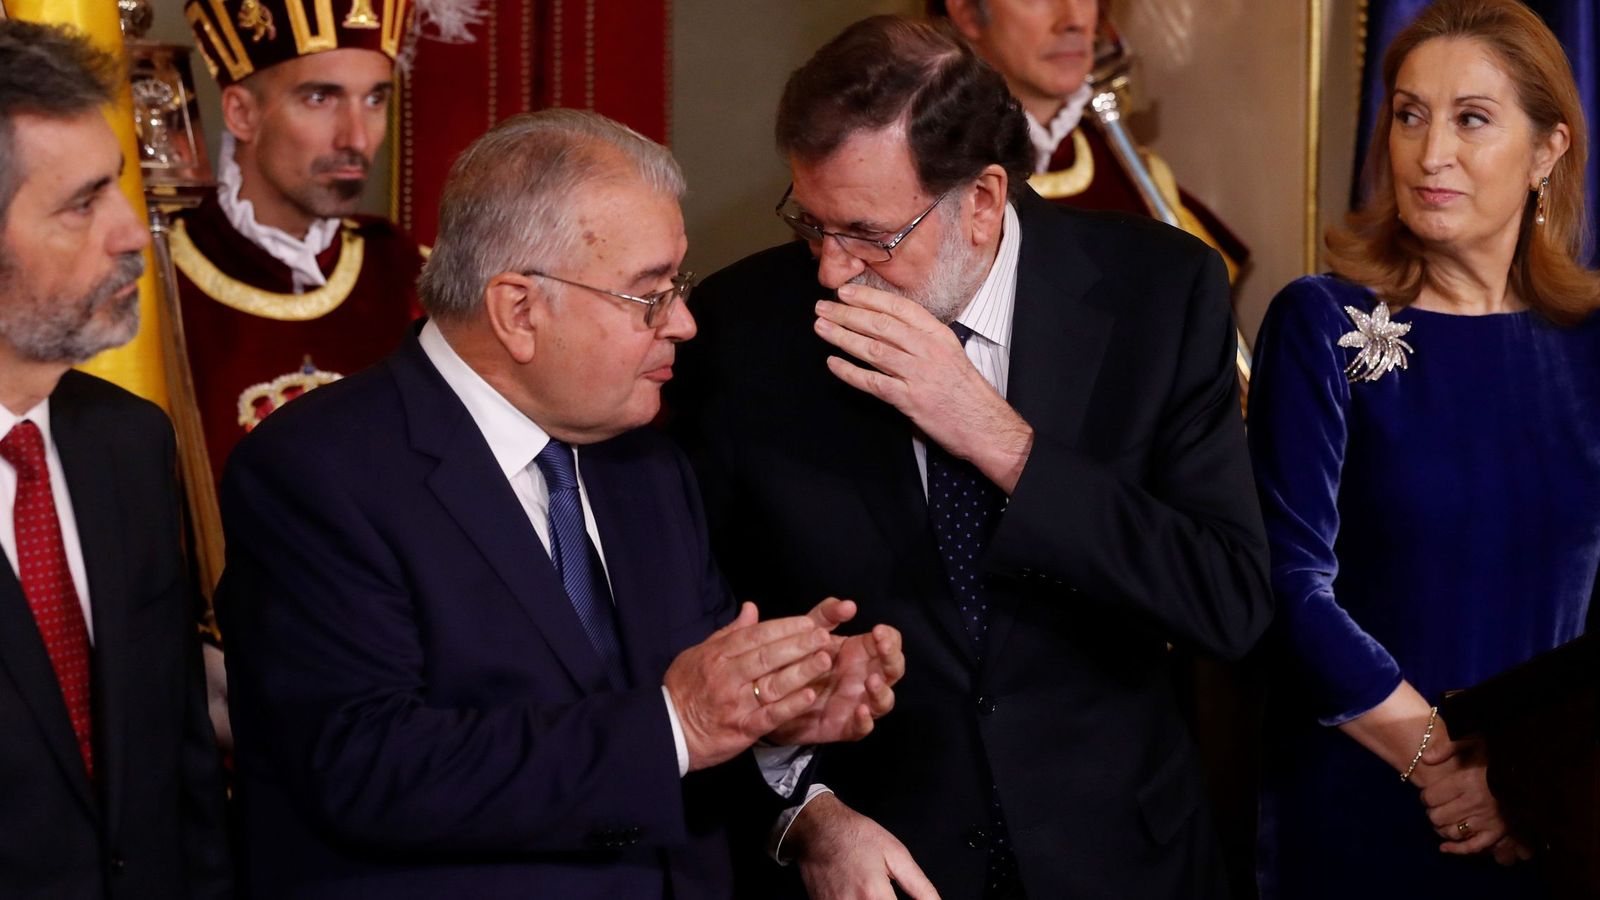 Foto: El presidente del Gobierno, Mariano Rajoy, entre el presidente del Tribunal Constitucional, Juan José González Rivas, y la presidenta del Congreso, Ana Pastor. (EFE)